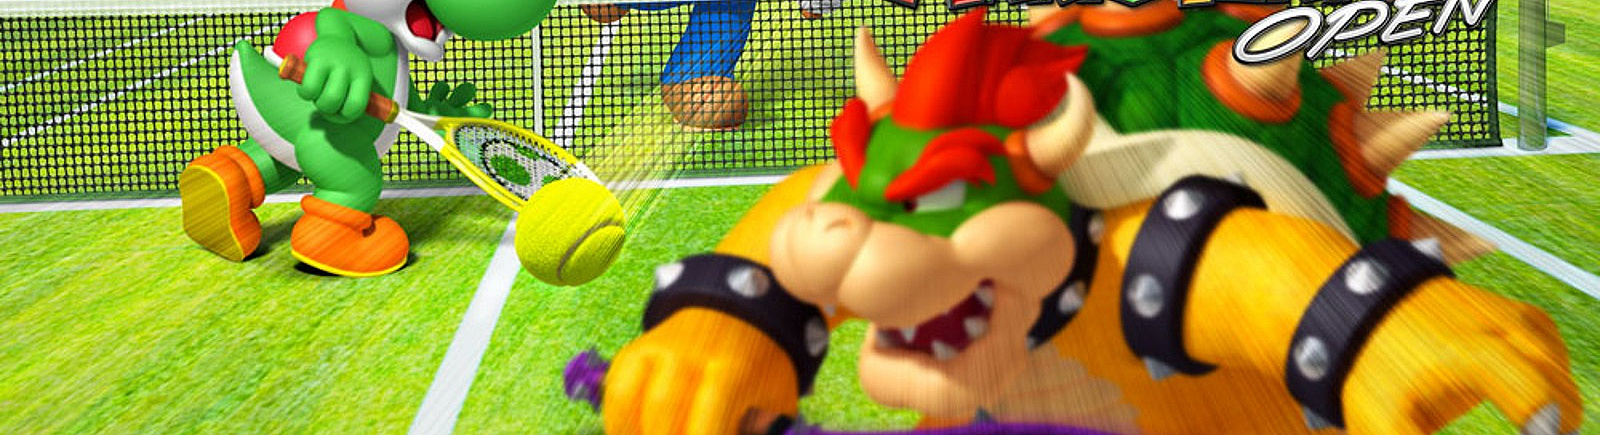 Дата выхода Mario Tennis Open  на Nintendo 3DS в России и во всем мире